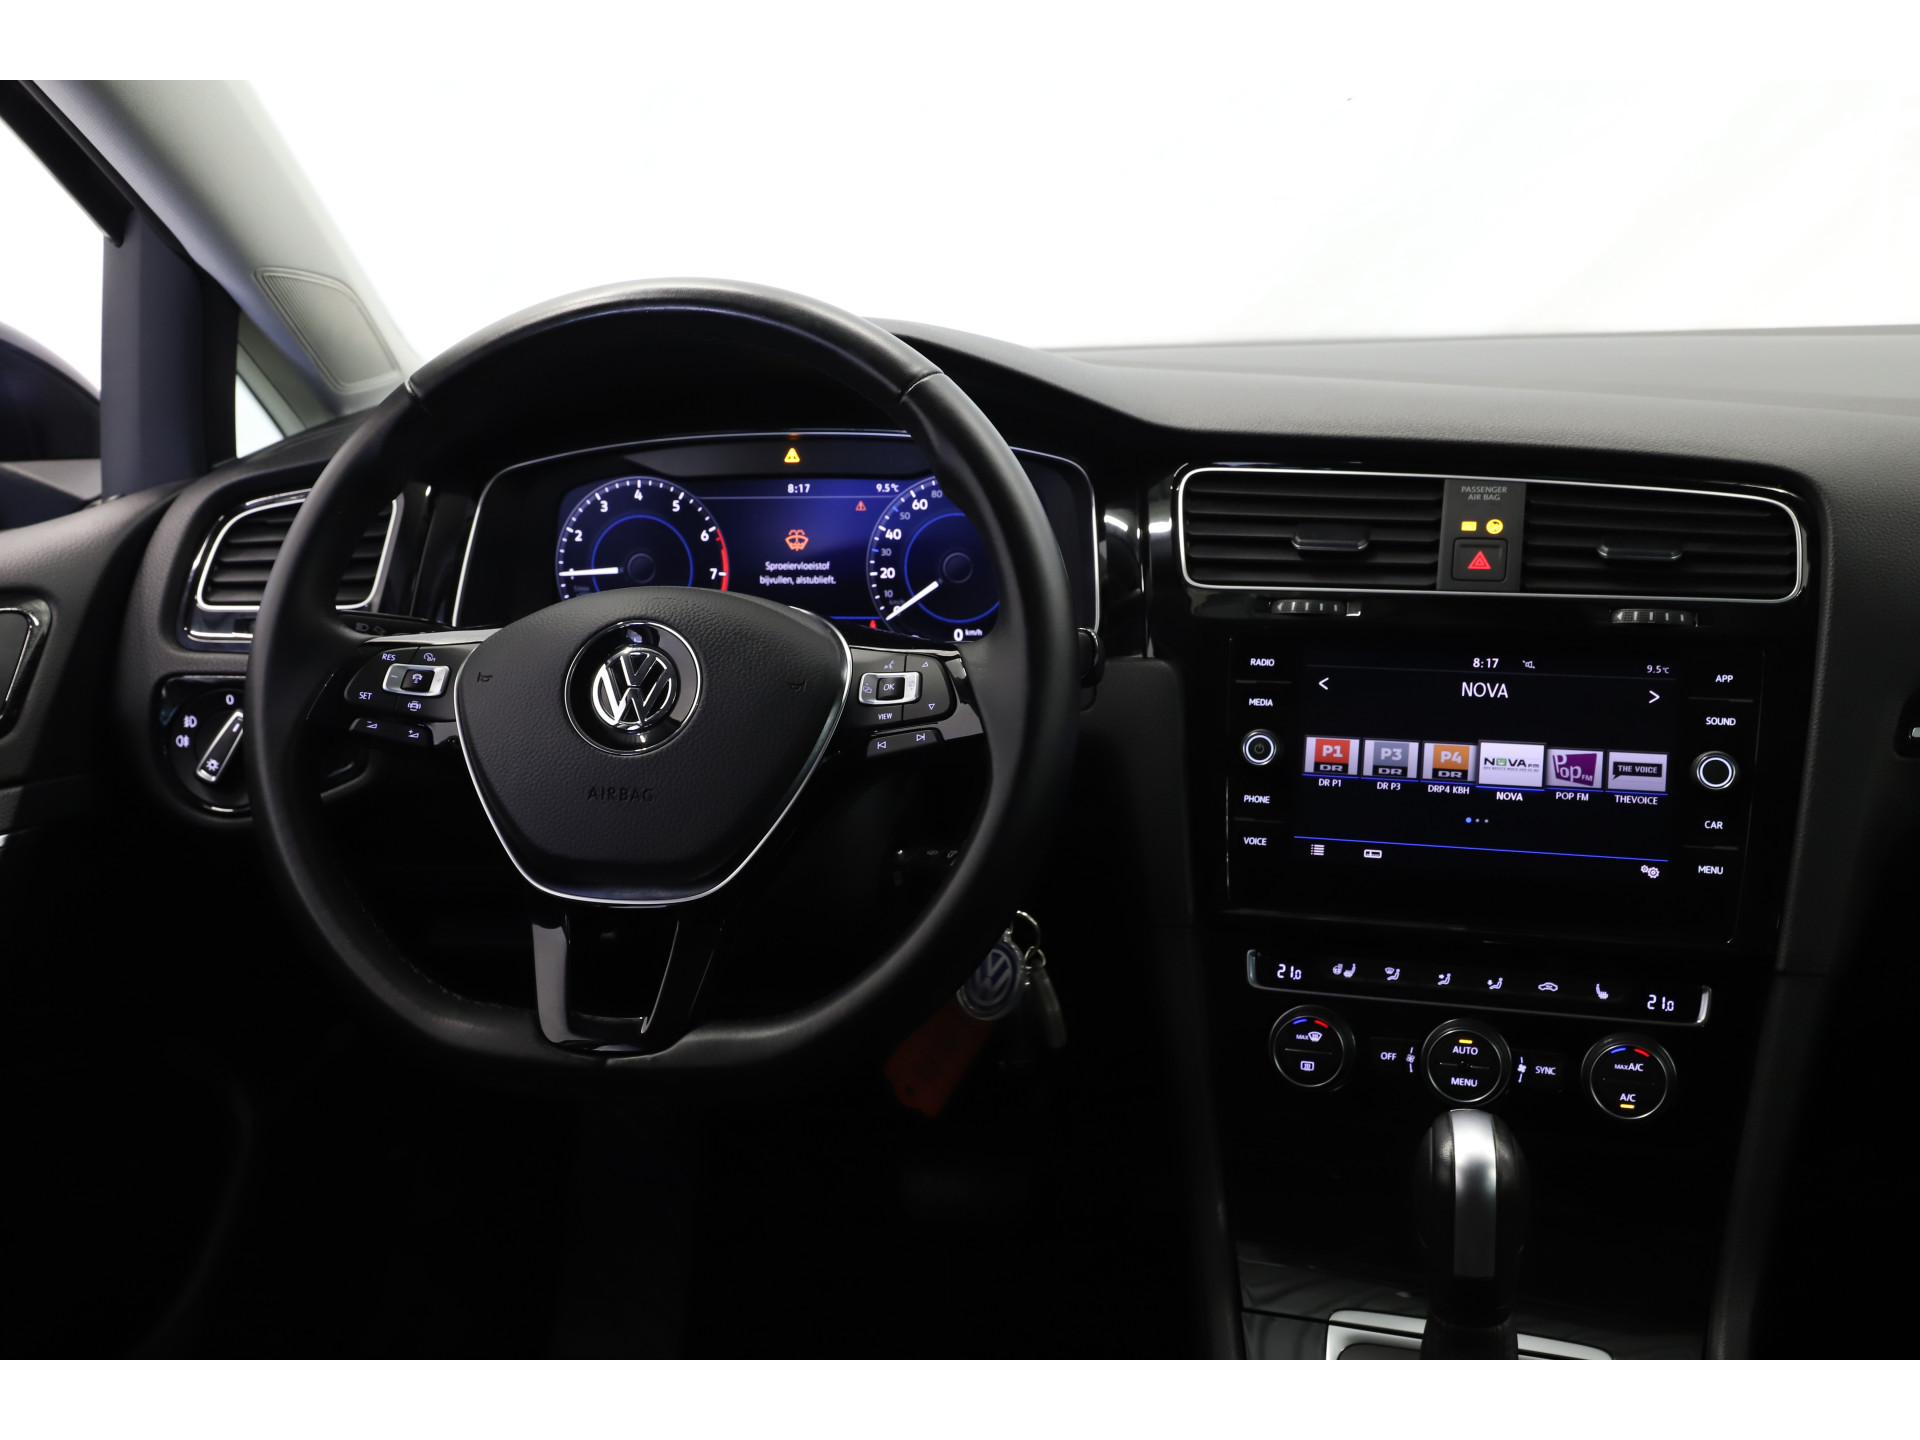 Volkswagen - Golf 1.5 TSI 150pk DSG Highline - 2019